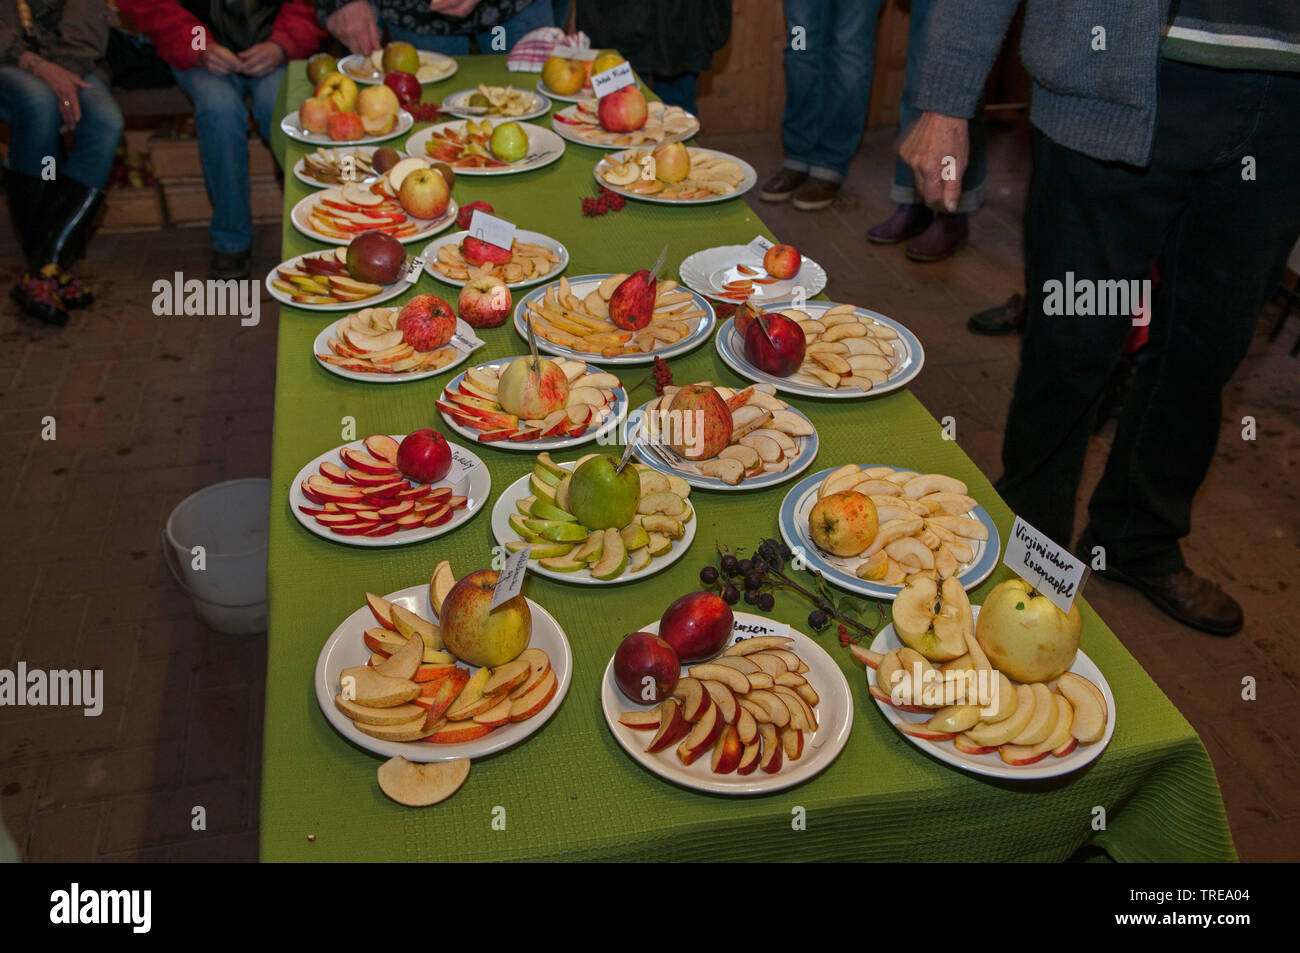 Verschiedene Apfelsorten vorgestellt, Deutschland, Schleswig-Holstein Stockfoto